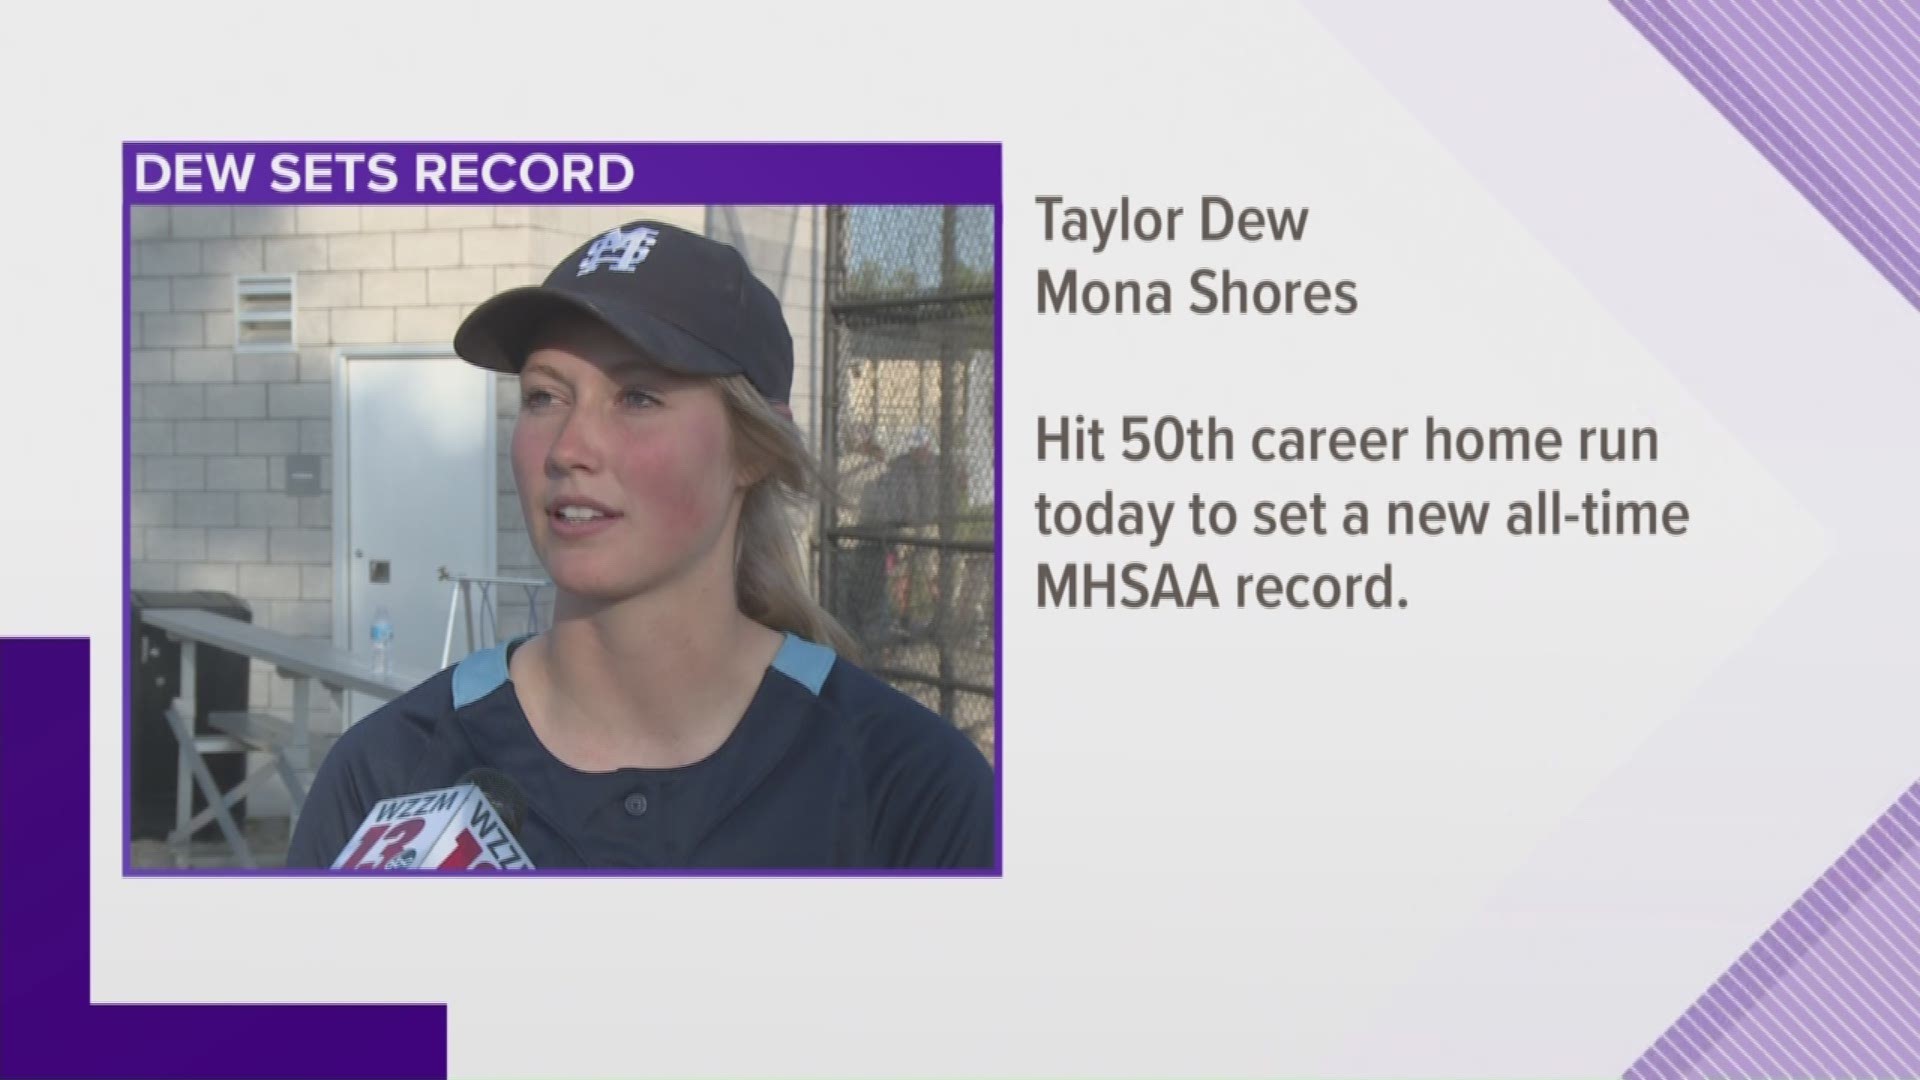 Dew sets record